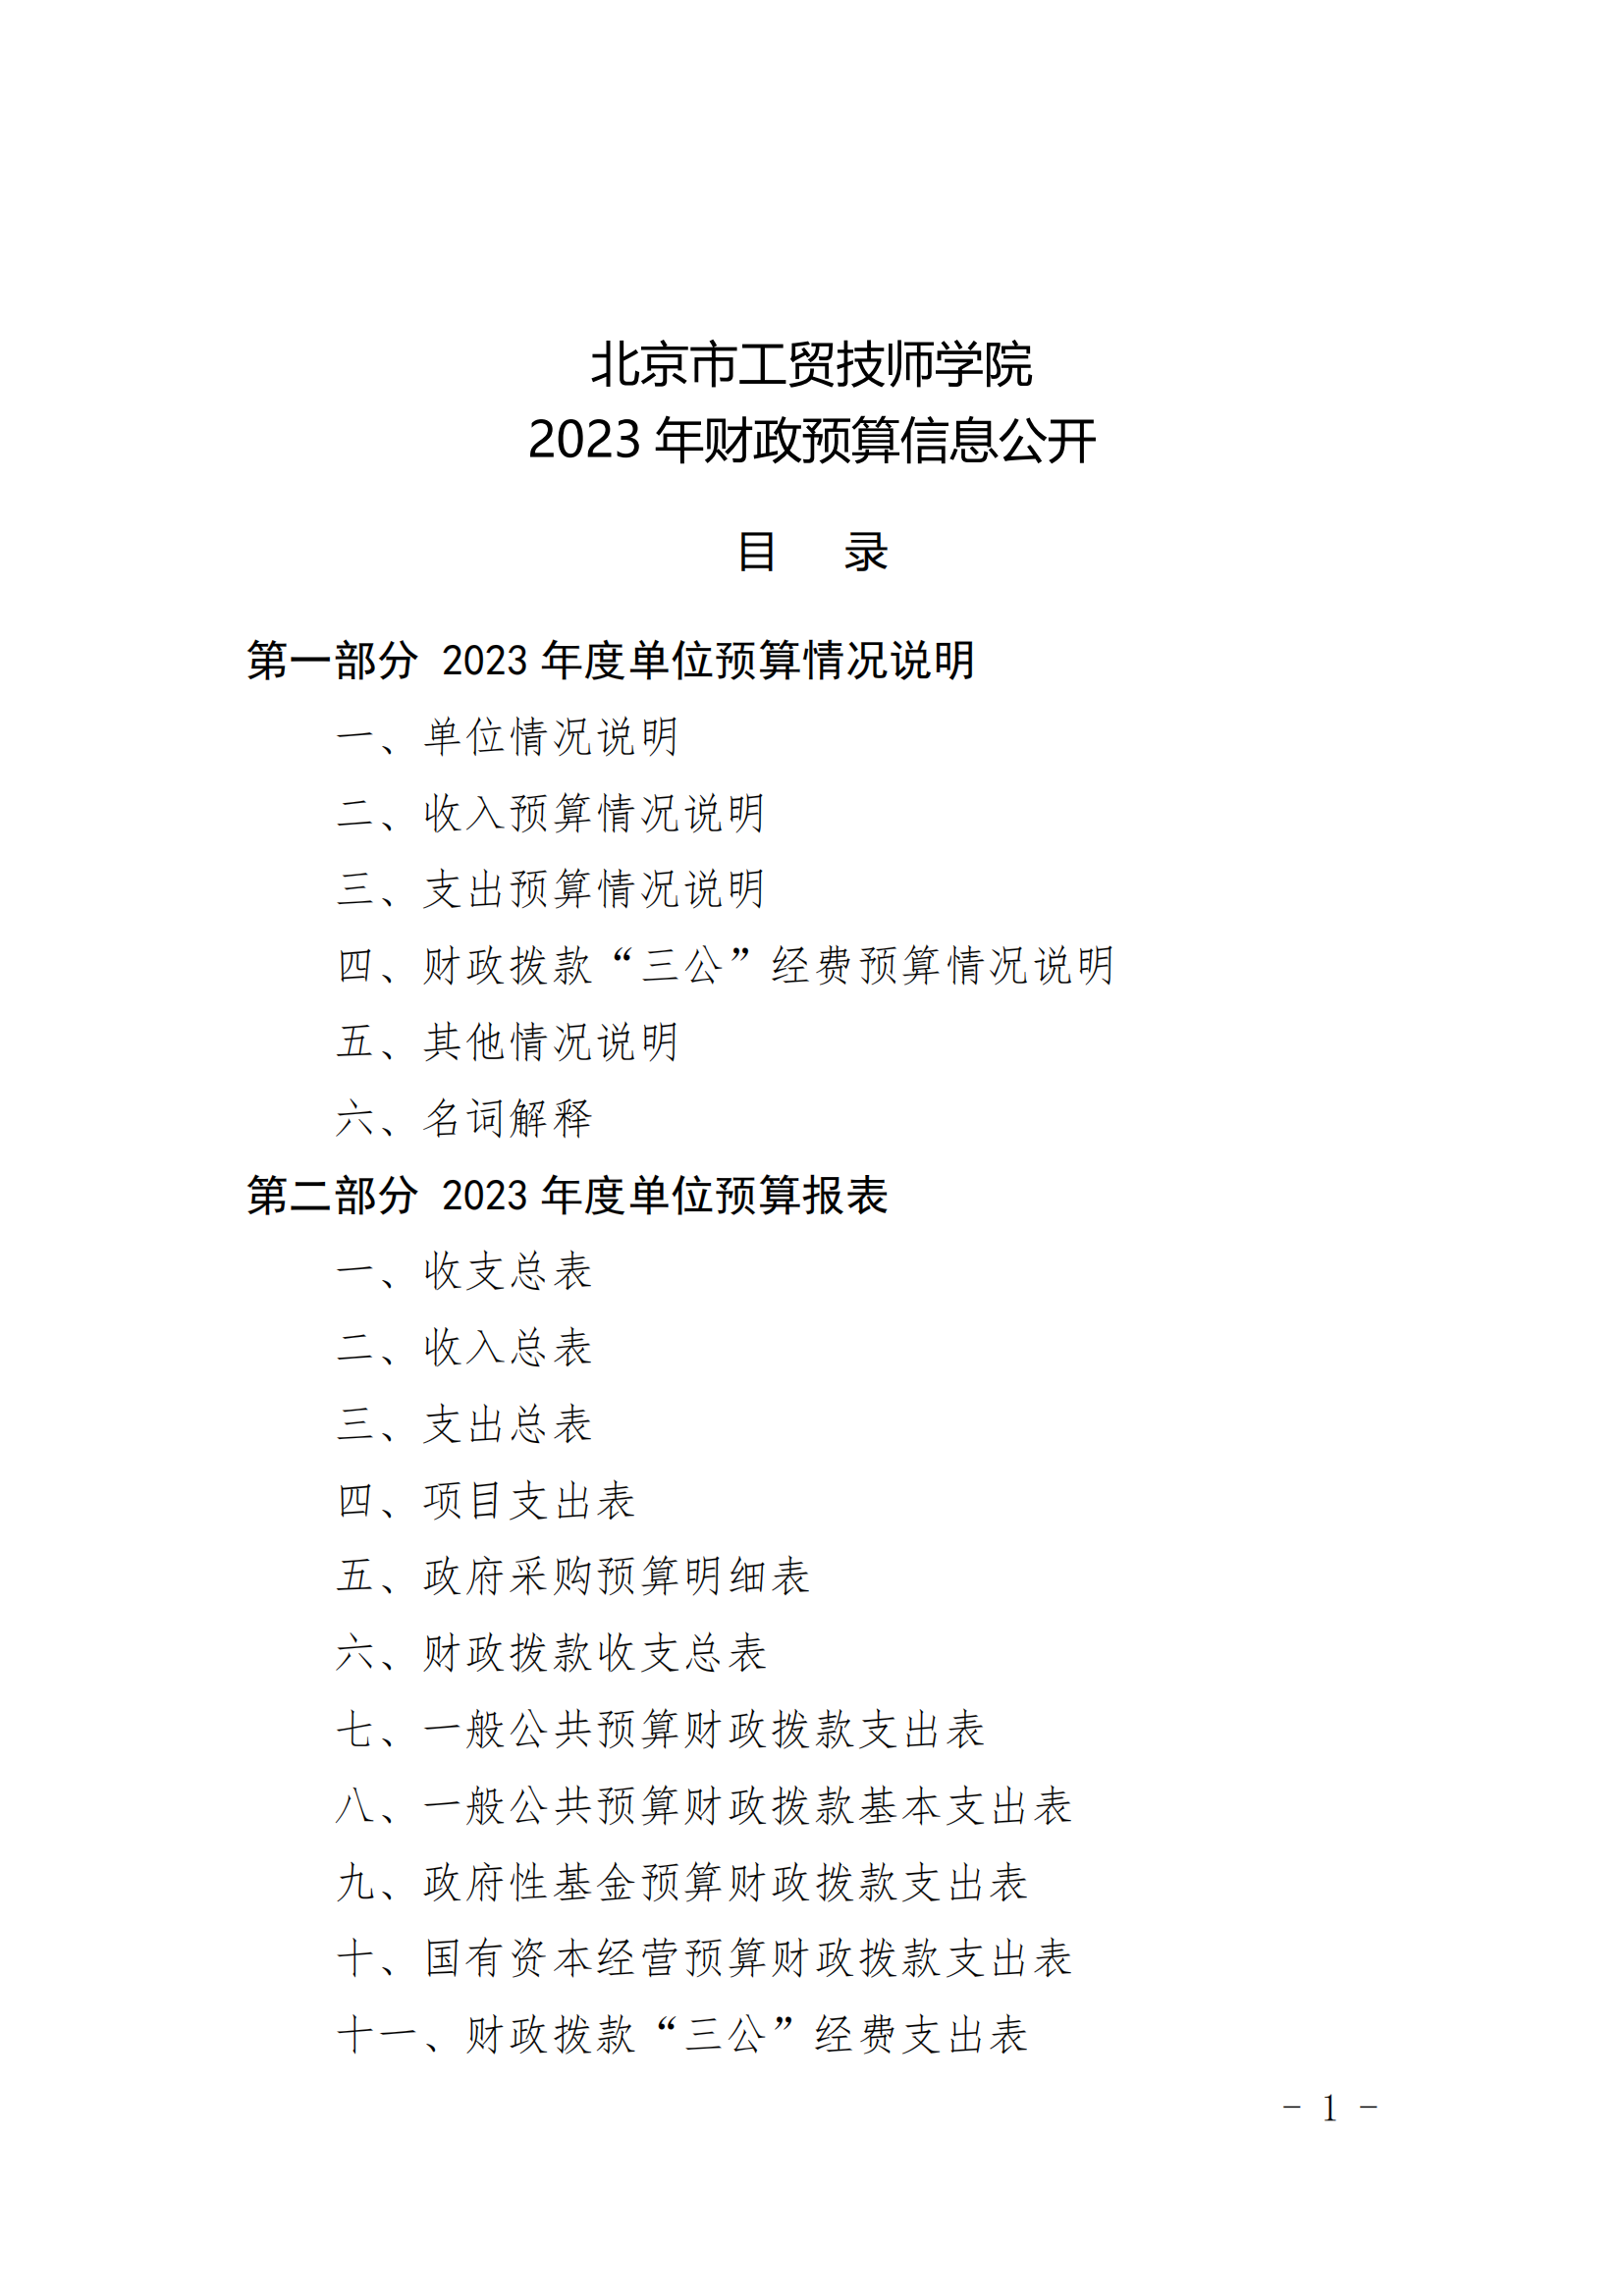 北京市工贸技师学院2023年财政预算信息公开_00.png